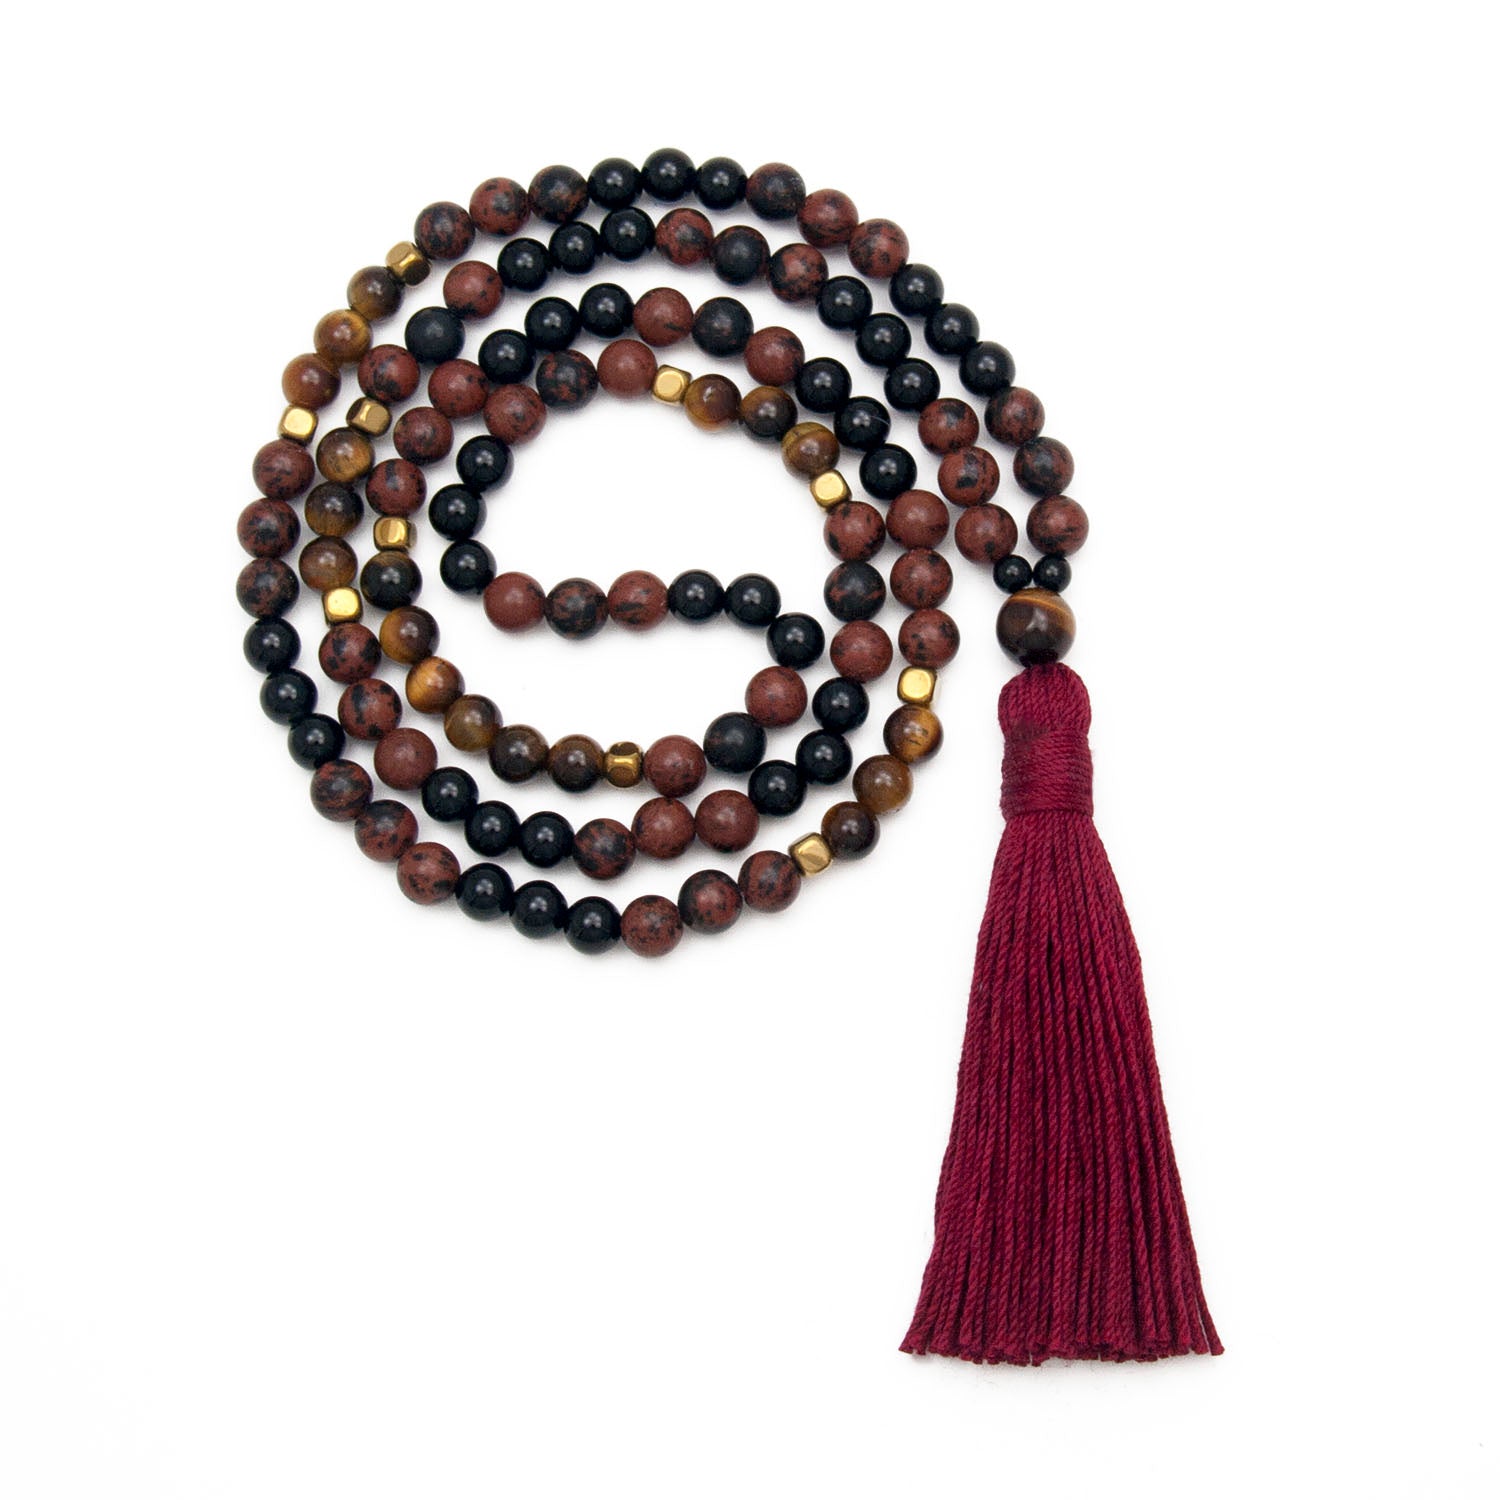 Mahogany Obsidian and Black Onyx Bracelet Malas – Japa Mala Beads